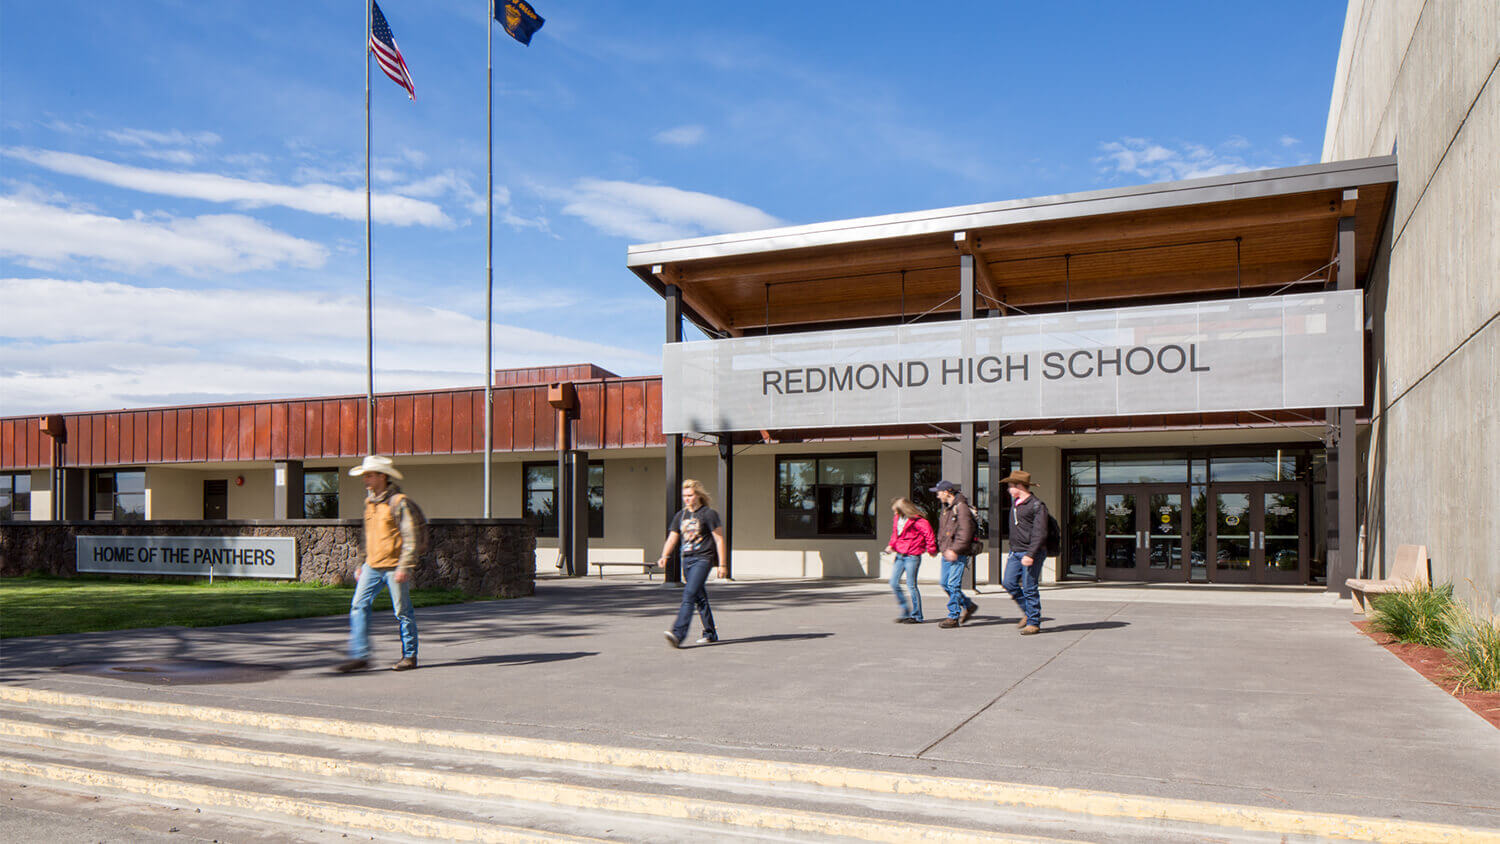 REDMOND HIGH SCHOOL